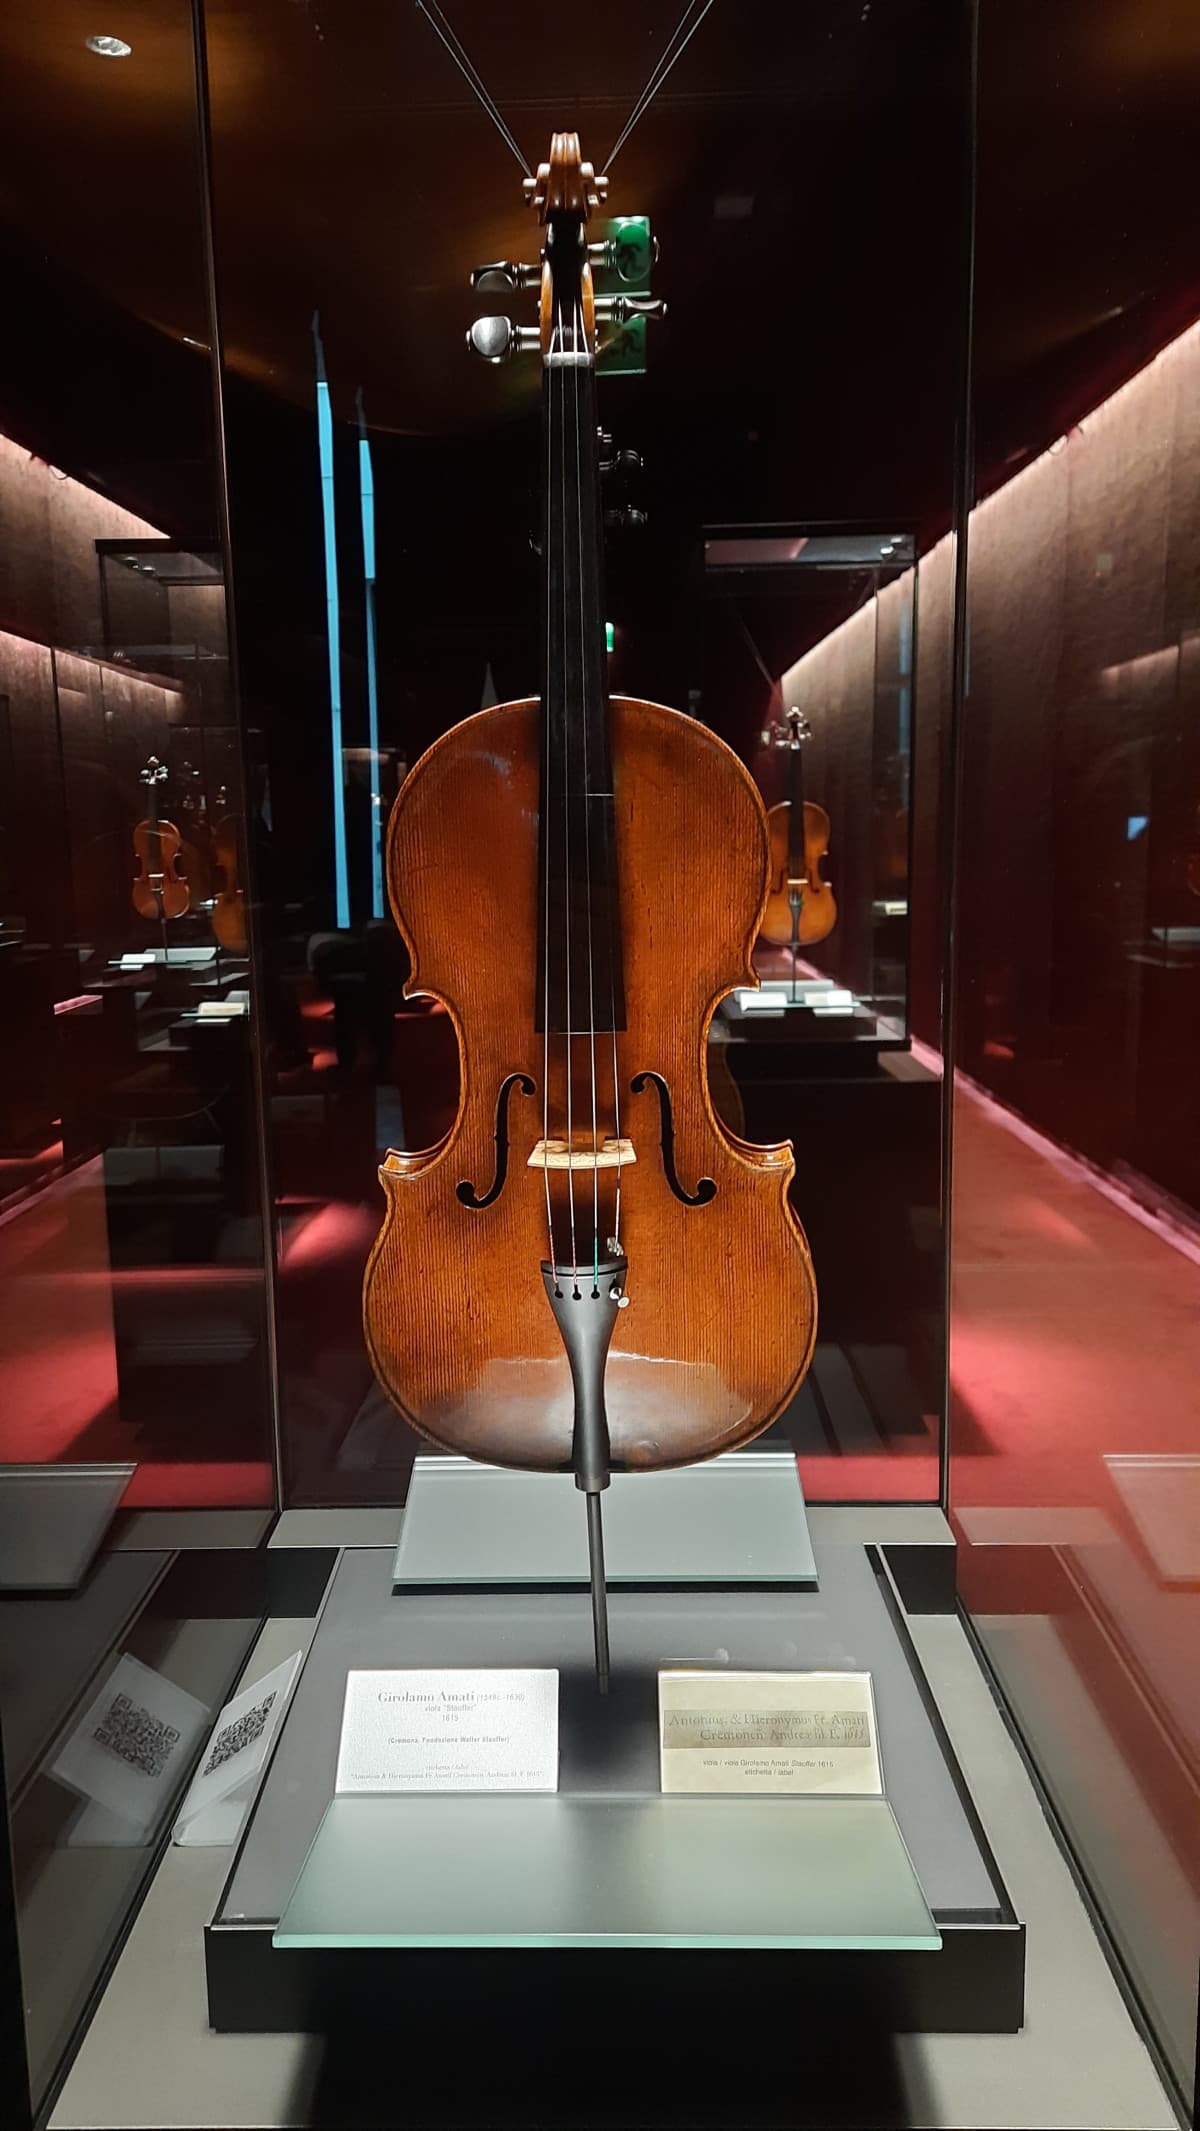 Stradivari, anno 1615. Museo del Violino, Cremona.